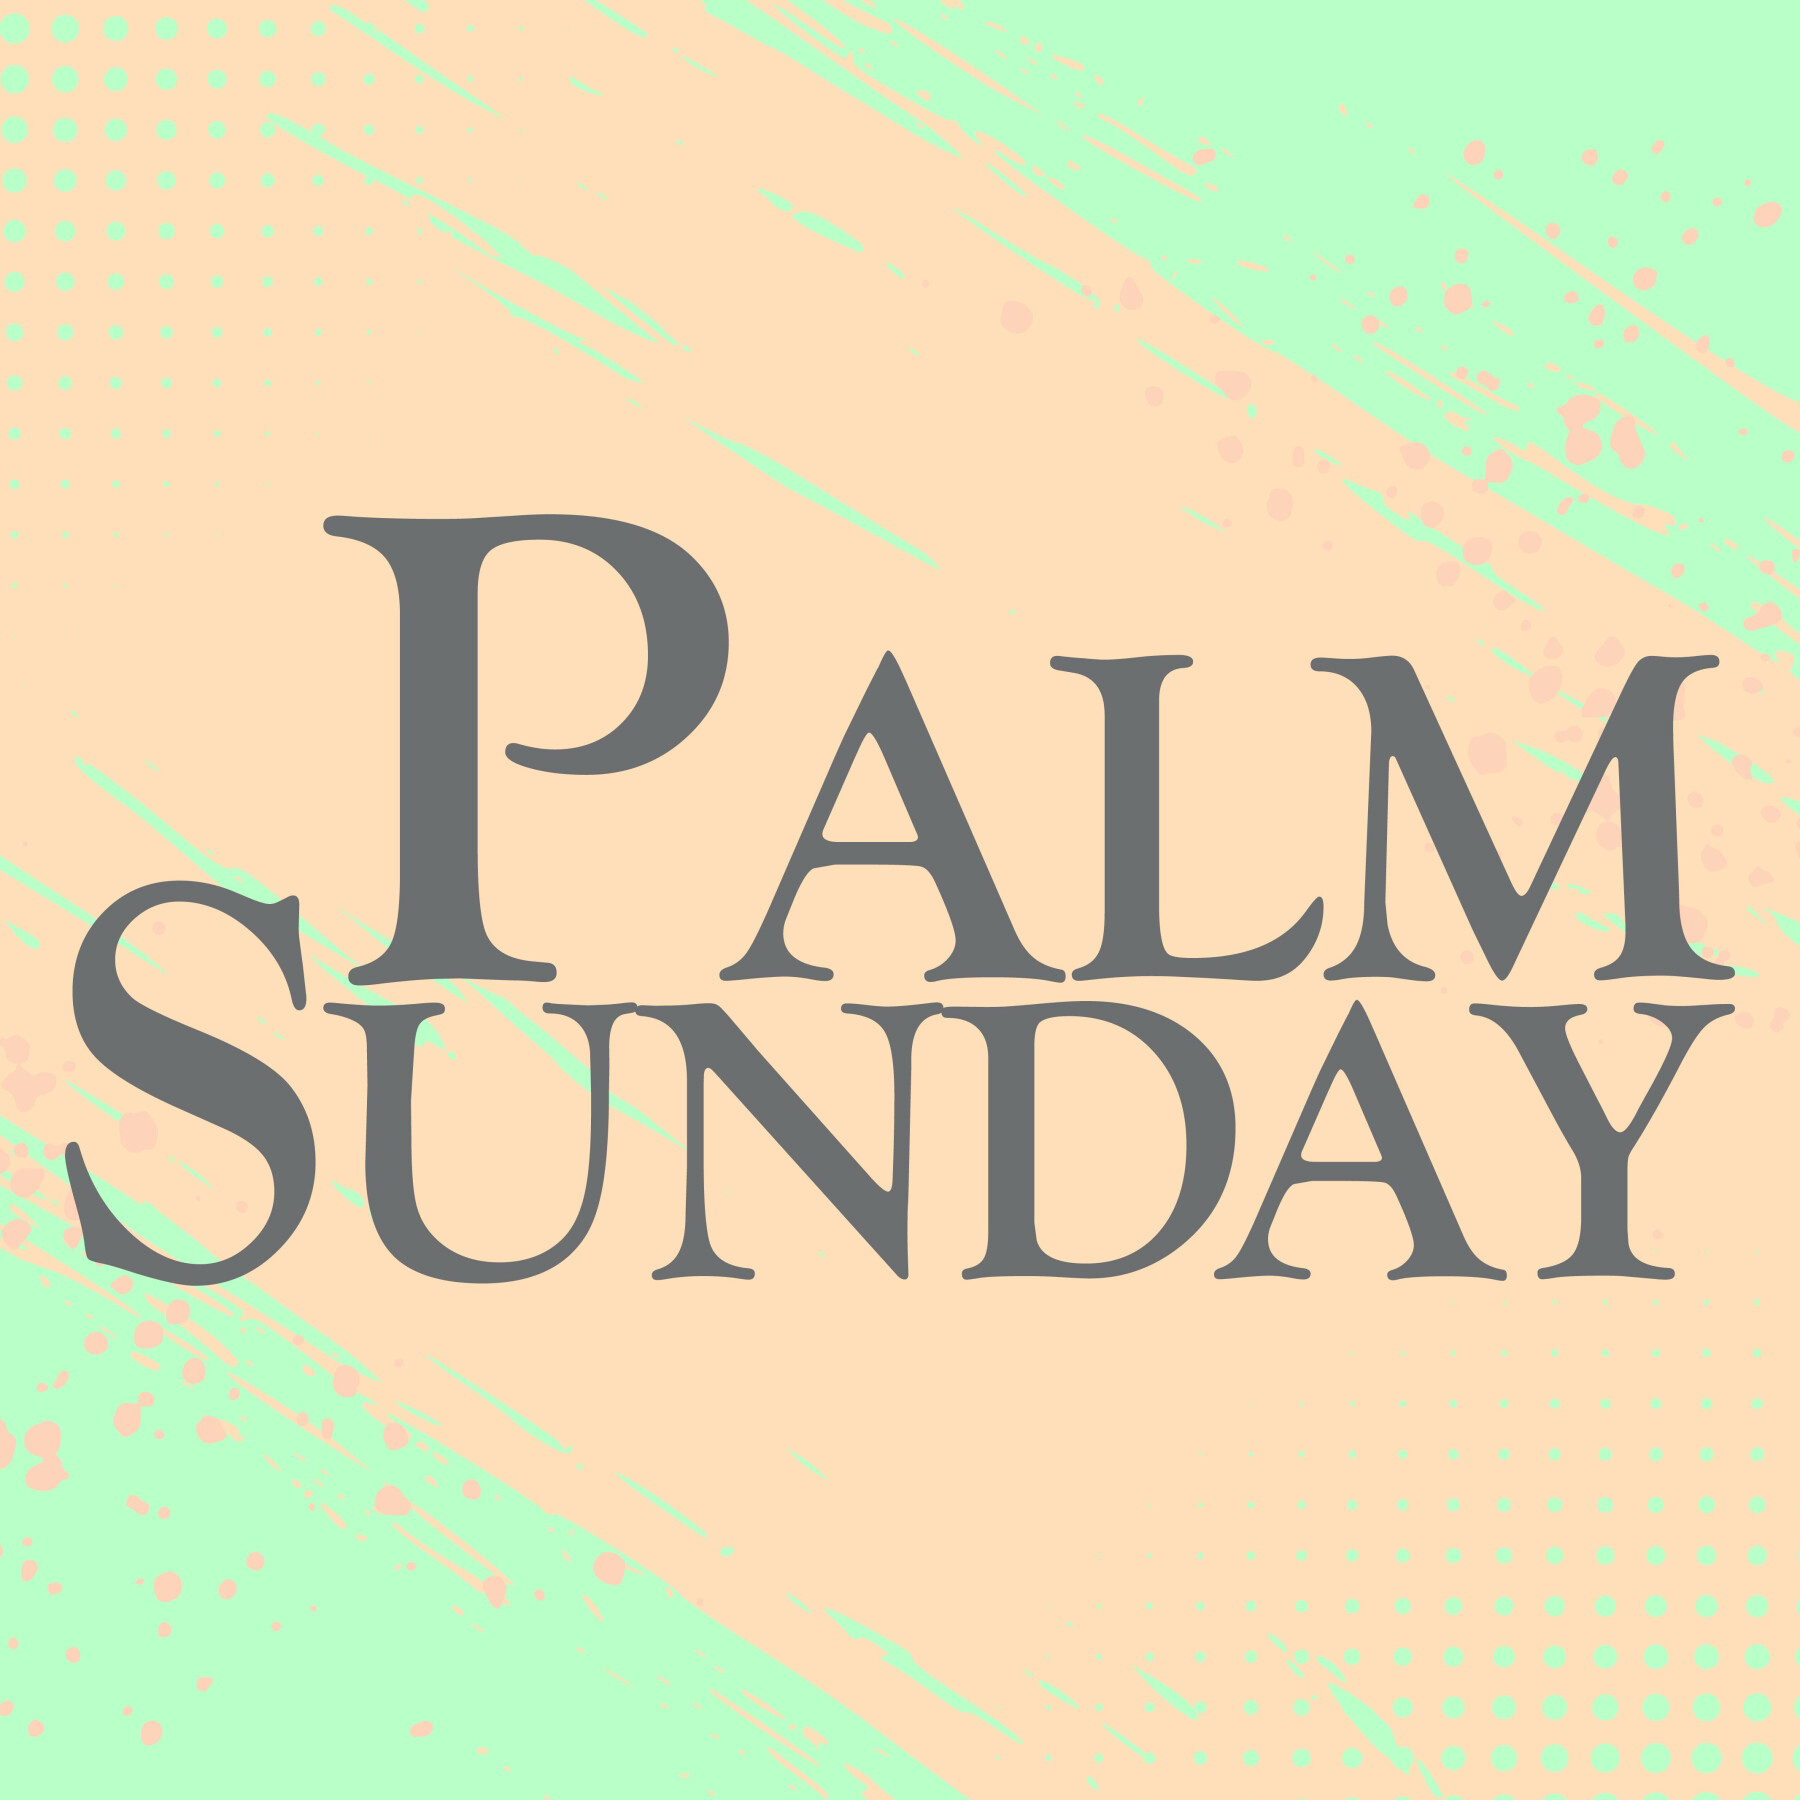 Palm Sunday Service 9:00AM